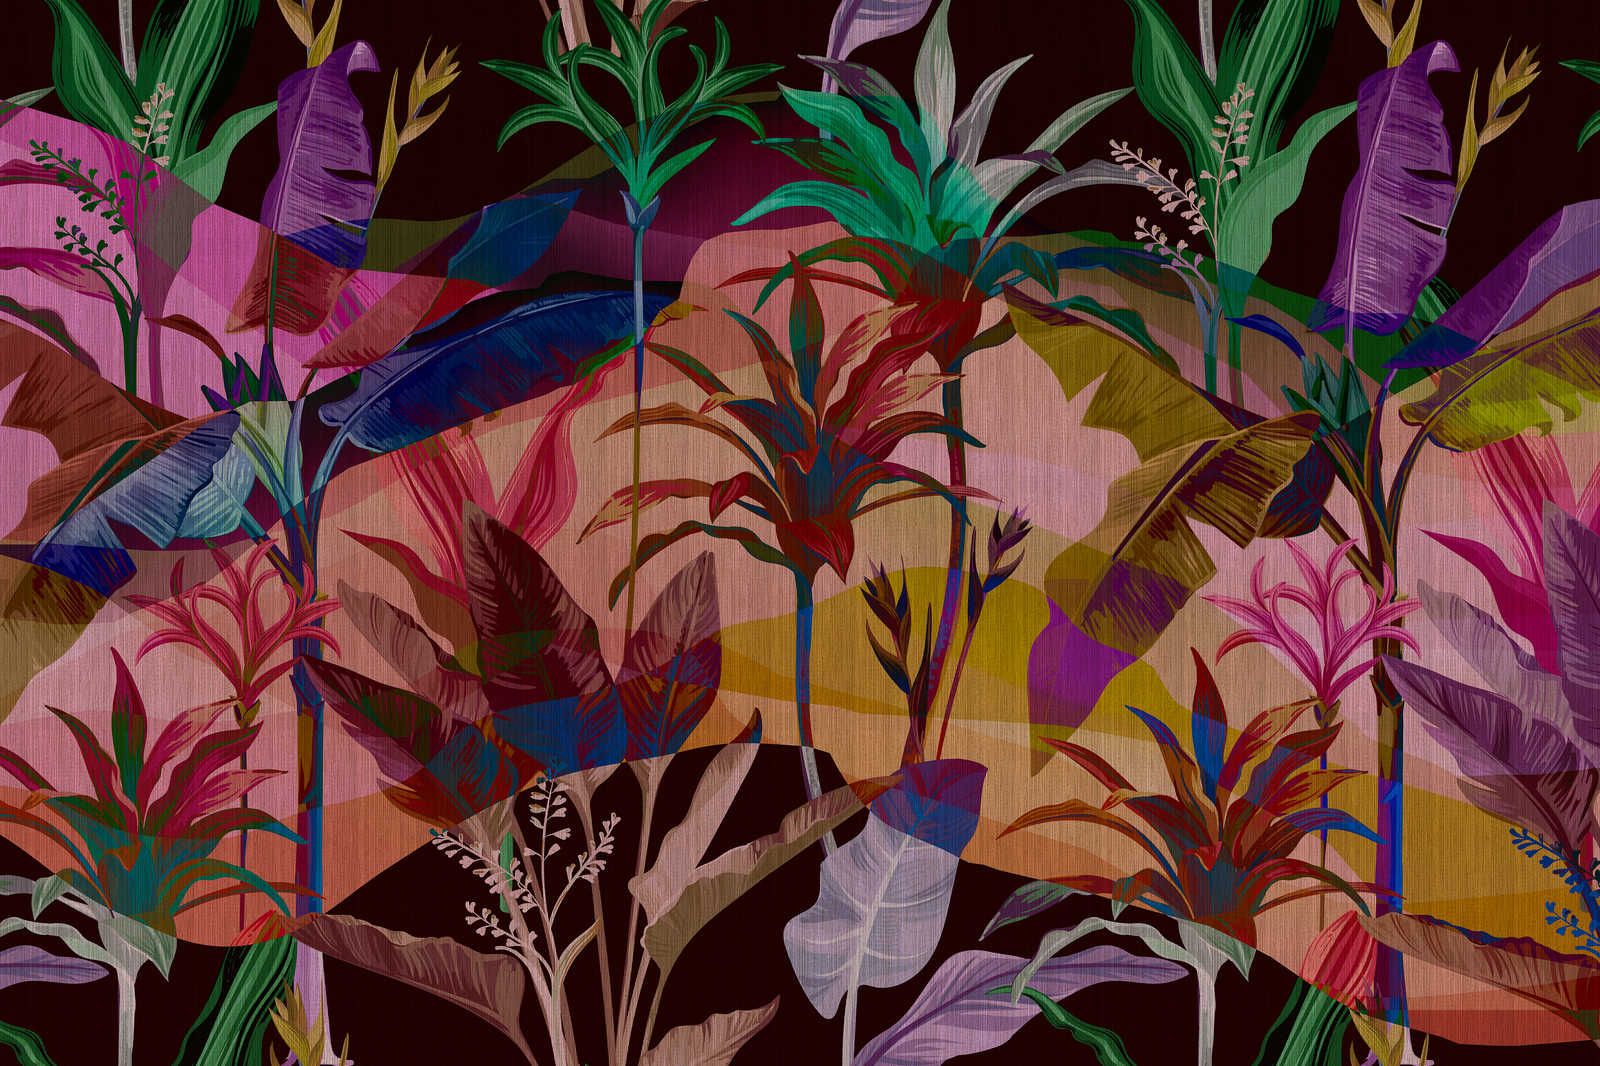             Palmyra 1 - Jungle toile colorée & abstraite feuilles - 0,90 m x 0,60 m
        